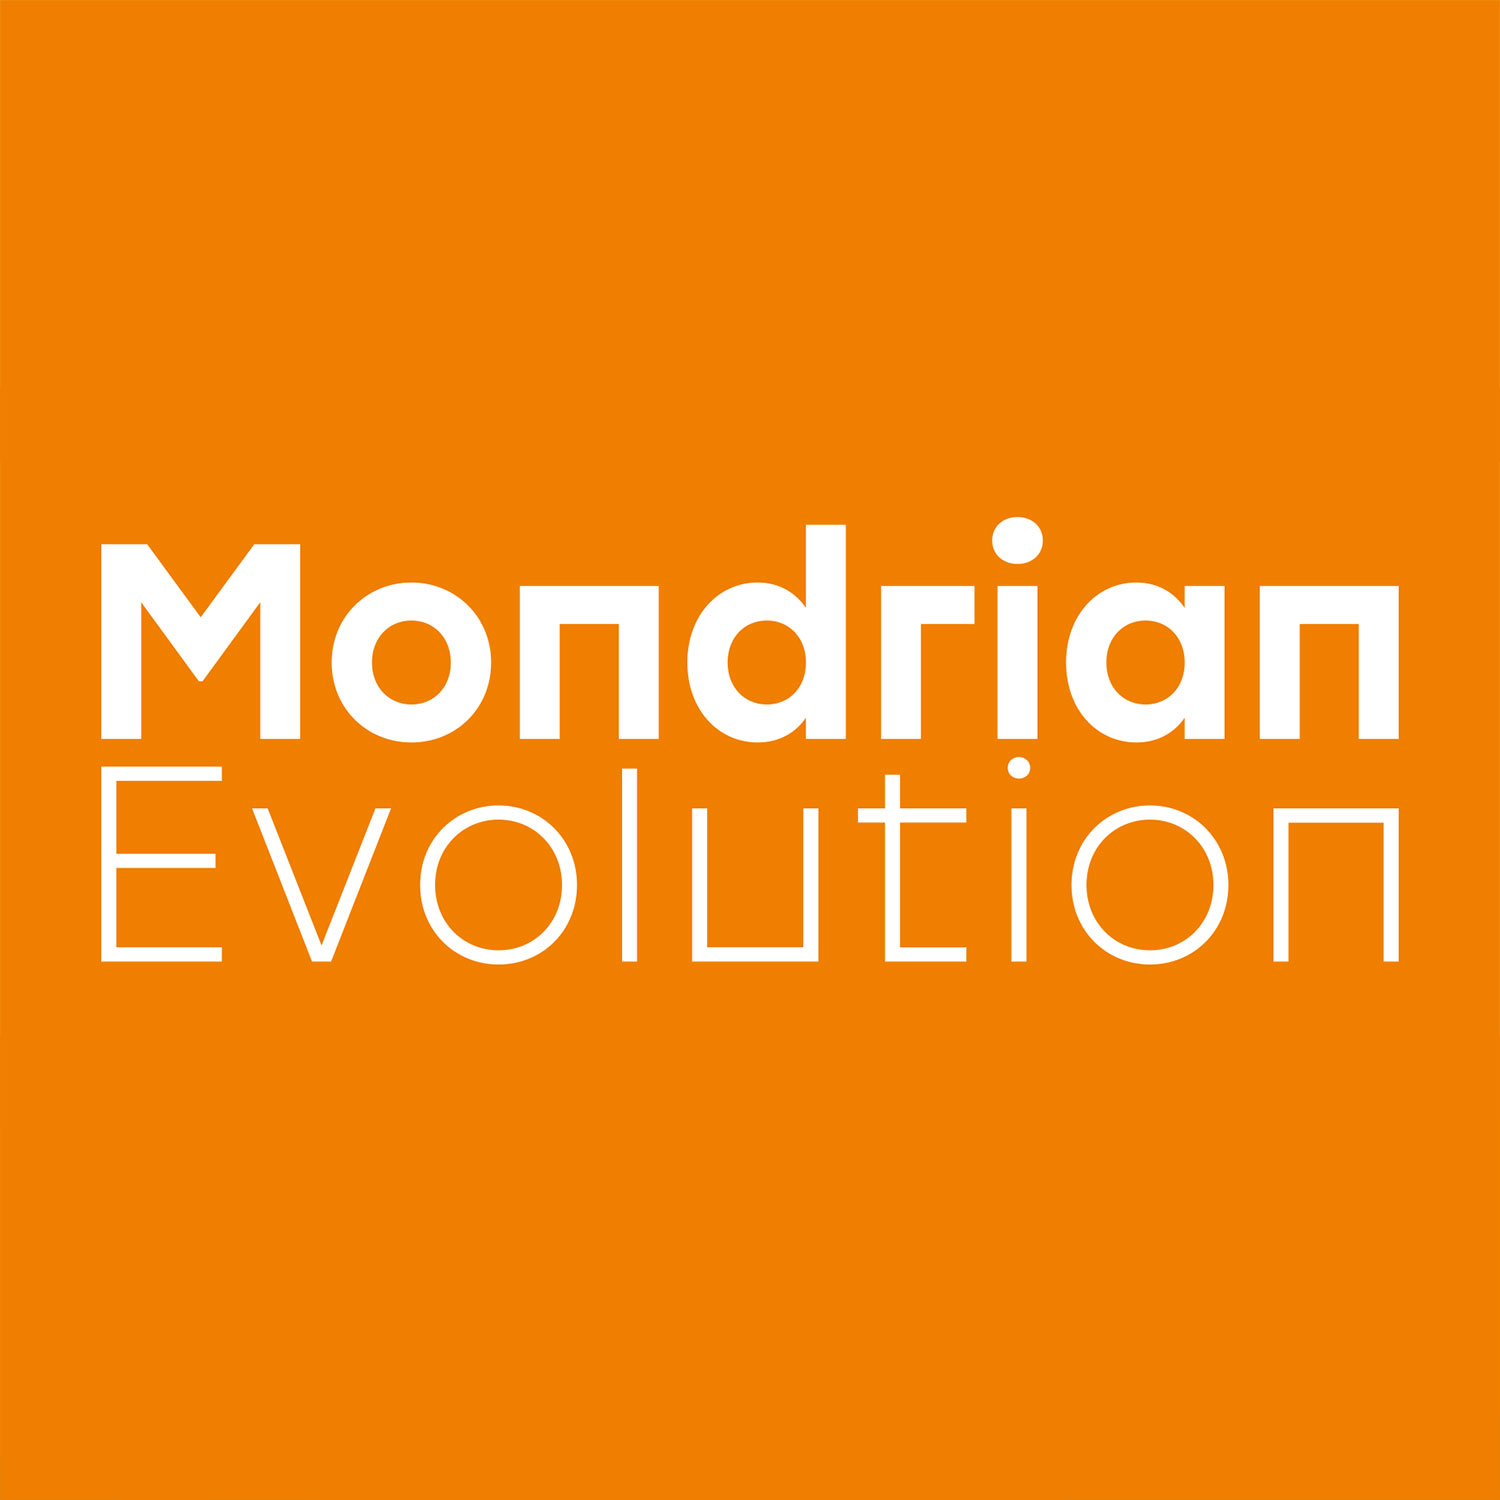 Mondrian Evolution Schriftzug